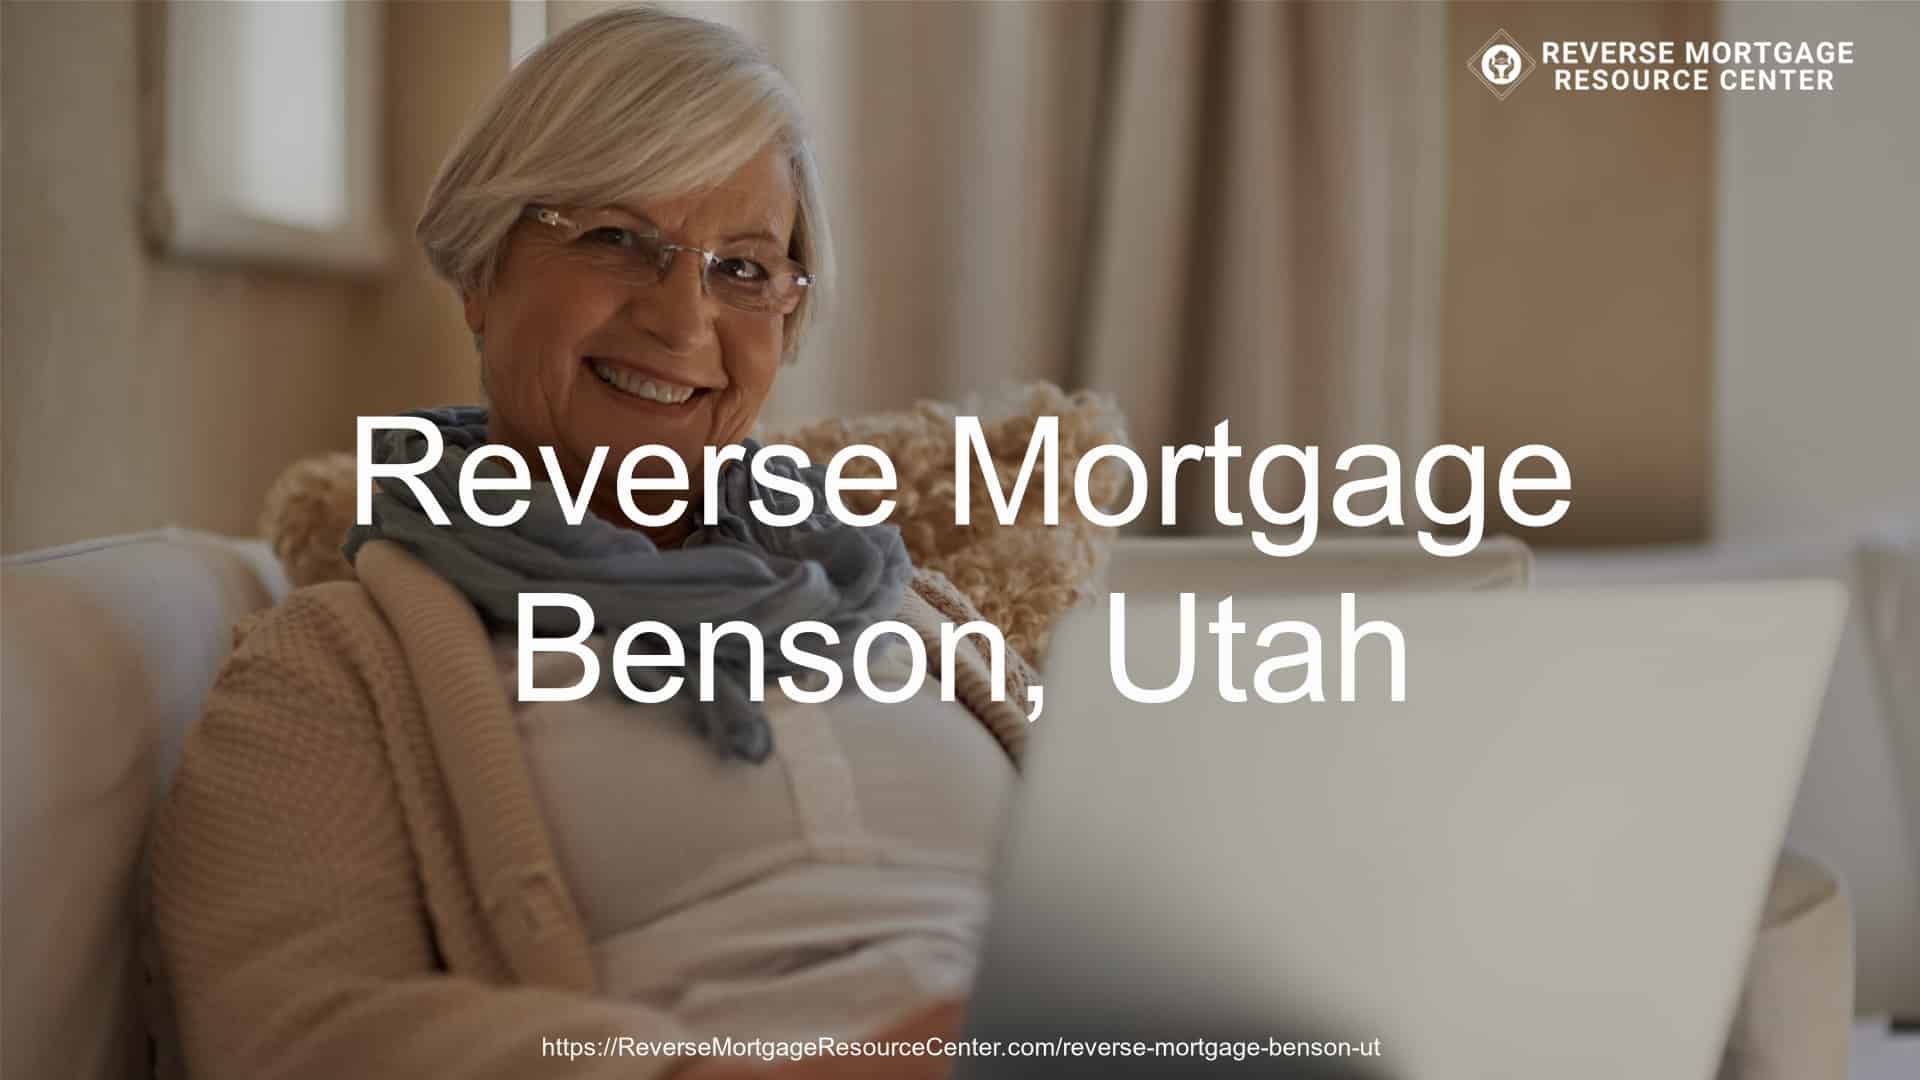 Reverse Mortgage Loans in Benson Utah